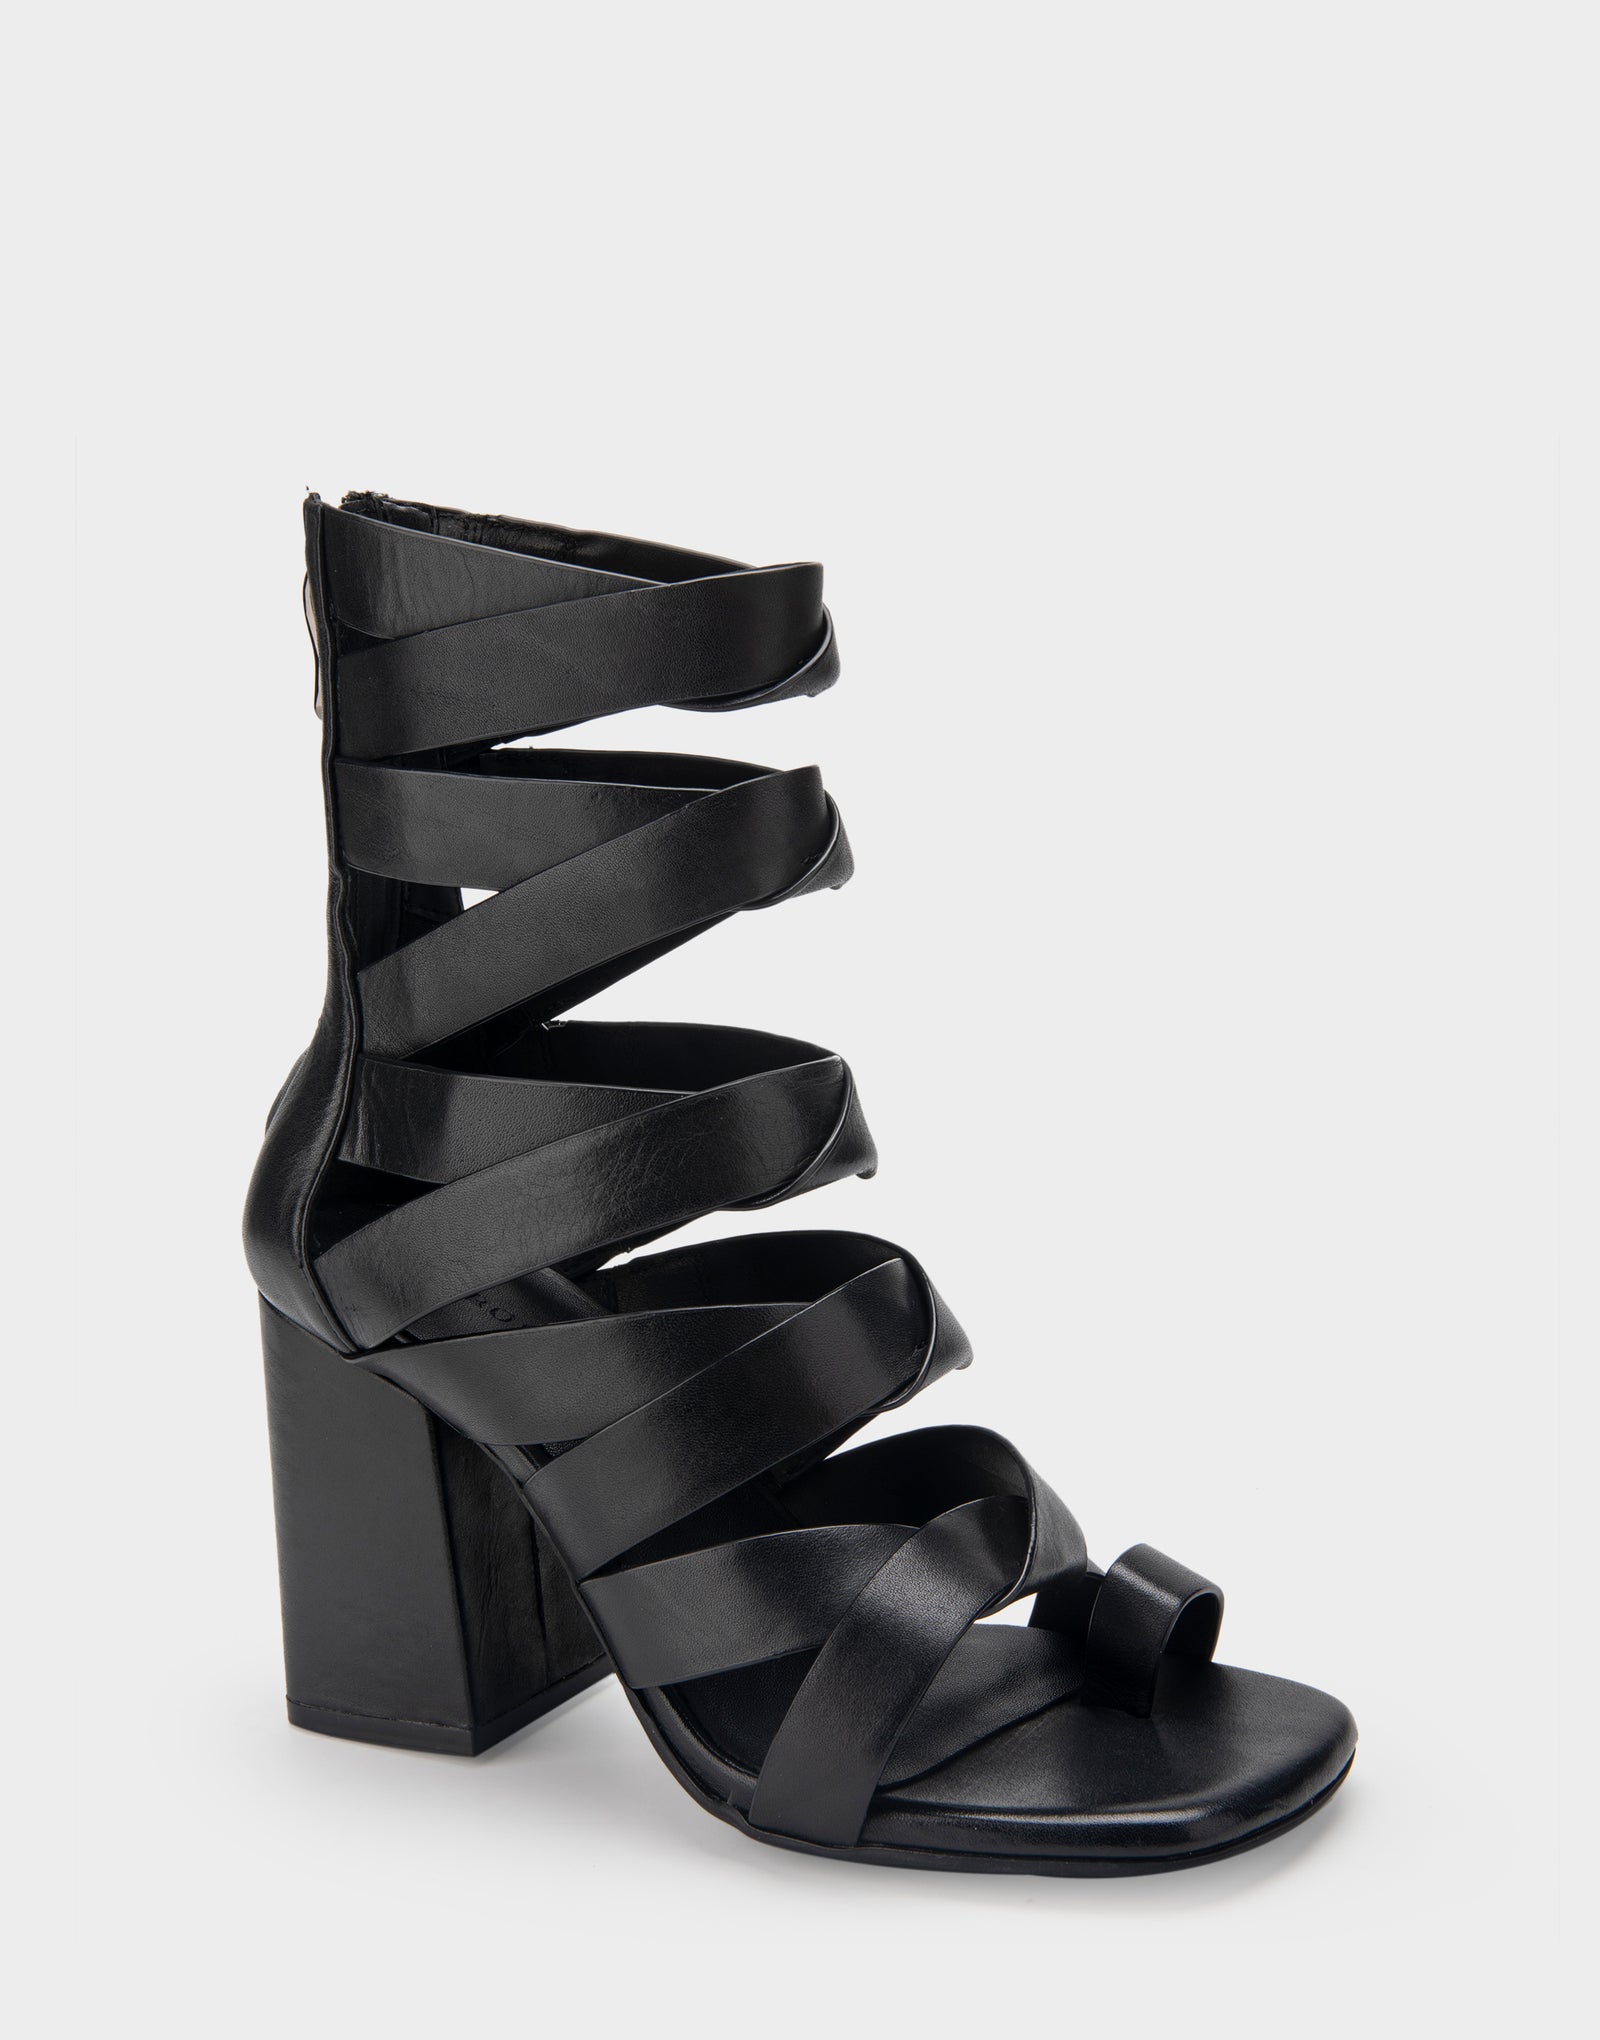 Women's Heeled Sandal in Black